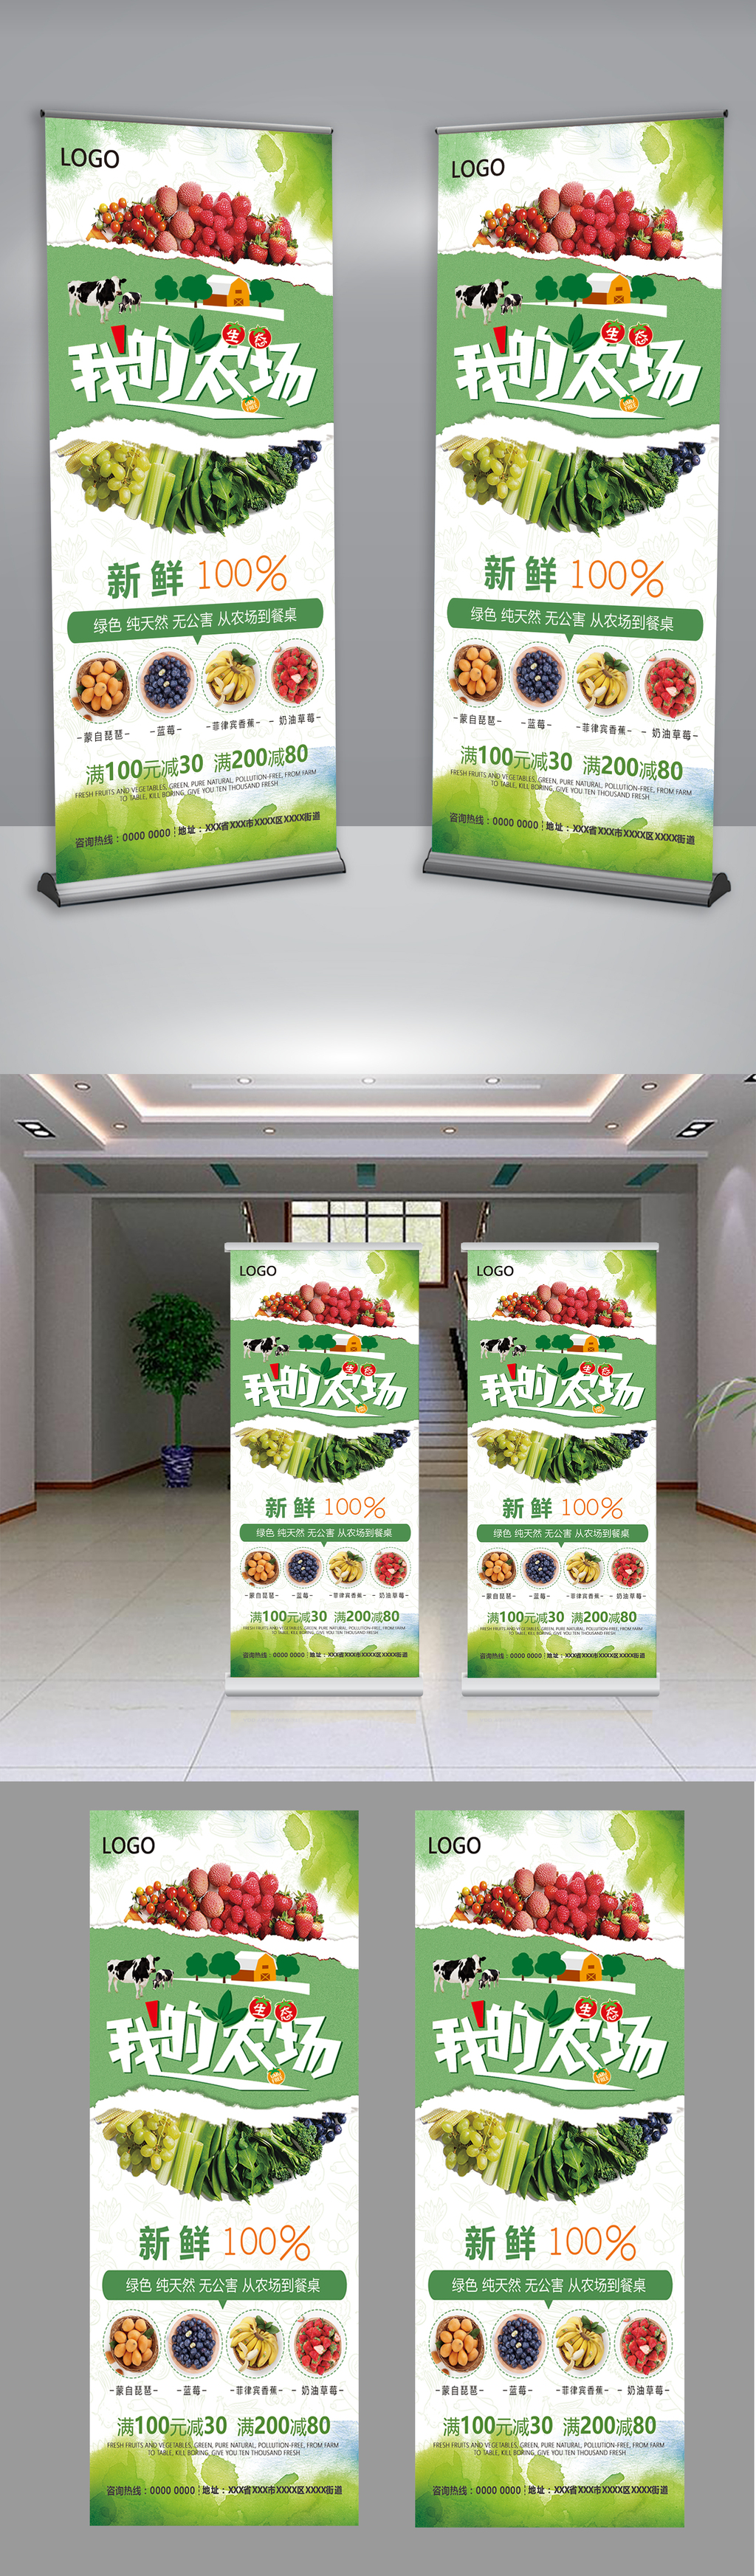 新鲜果蔬生态农场水果产品展架设计图片